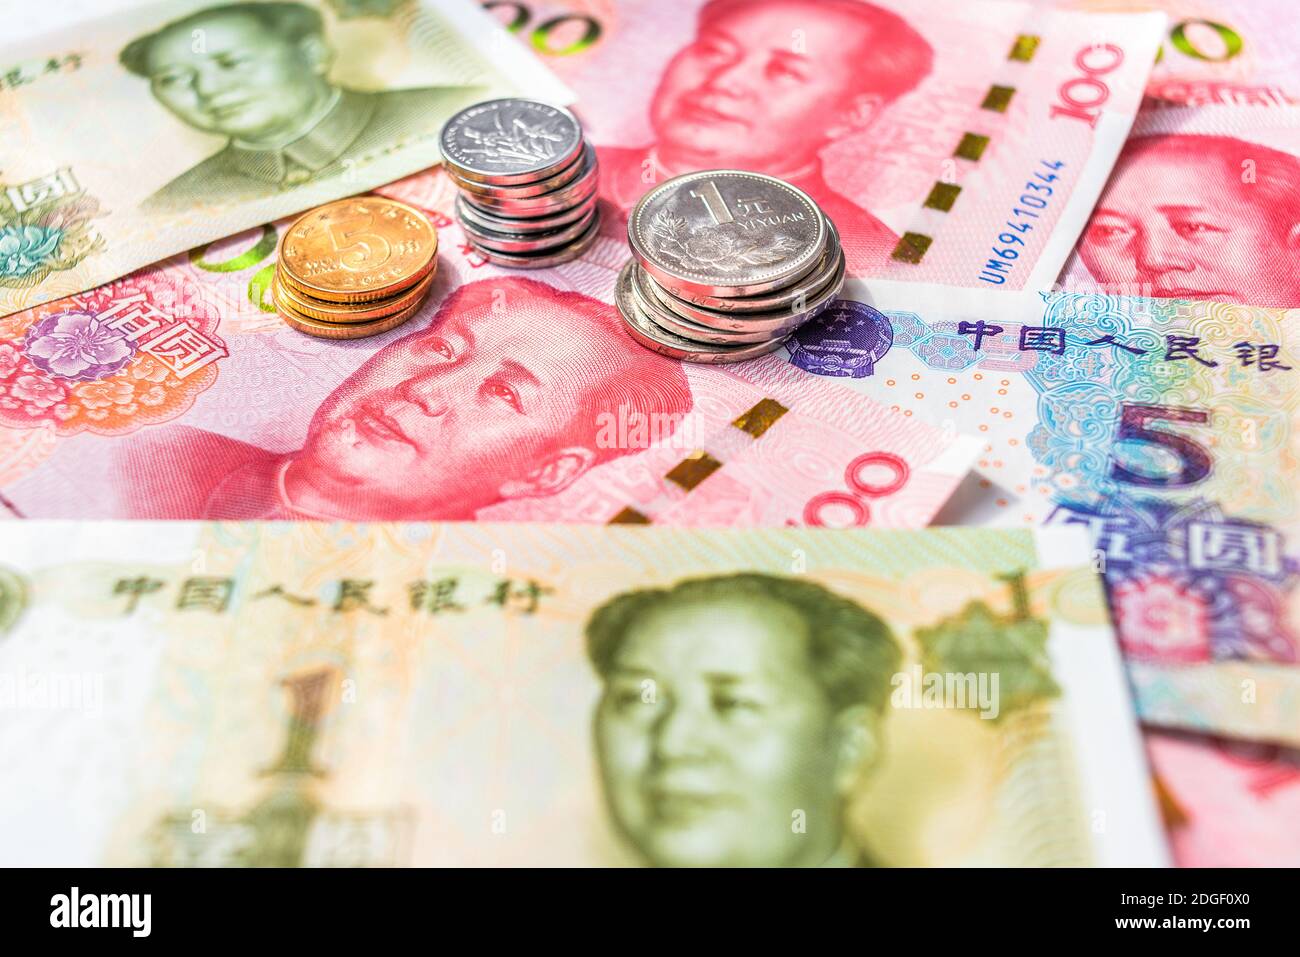 Offizielle Währung von China. Renminbi, Abkürzung RMB. Yuan Grundeinheit des Renminbi. Chinesisches Geld. Münzen und Papierrechnungen. Stockfoto